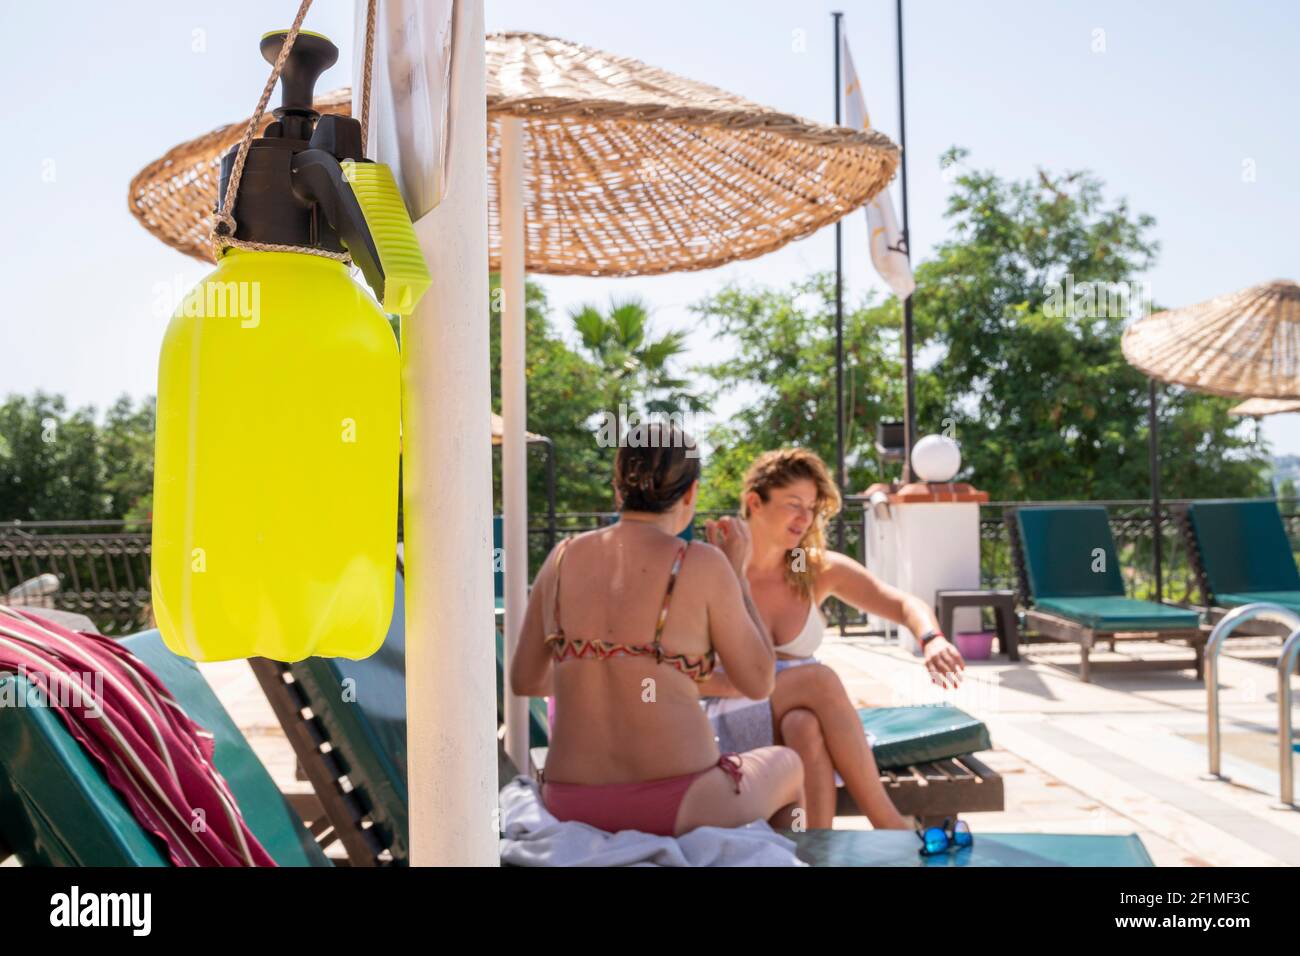 Verano 2021 - Nuevo normal. Desinfectante a base de alcohol contra Covid-19 colgado en un poste en la zona de la piscina. Dos mujeres sentadas en las tumbonas y hablando Foto de stock